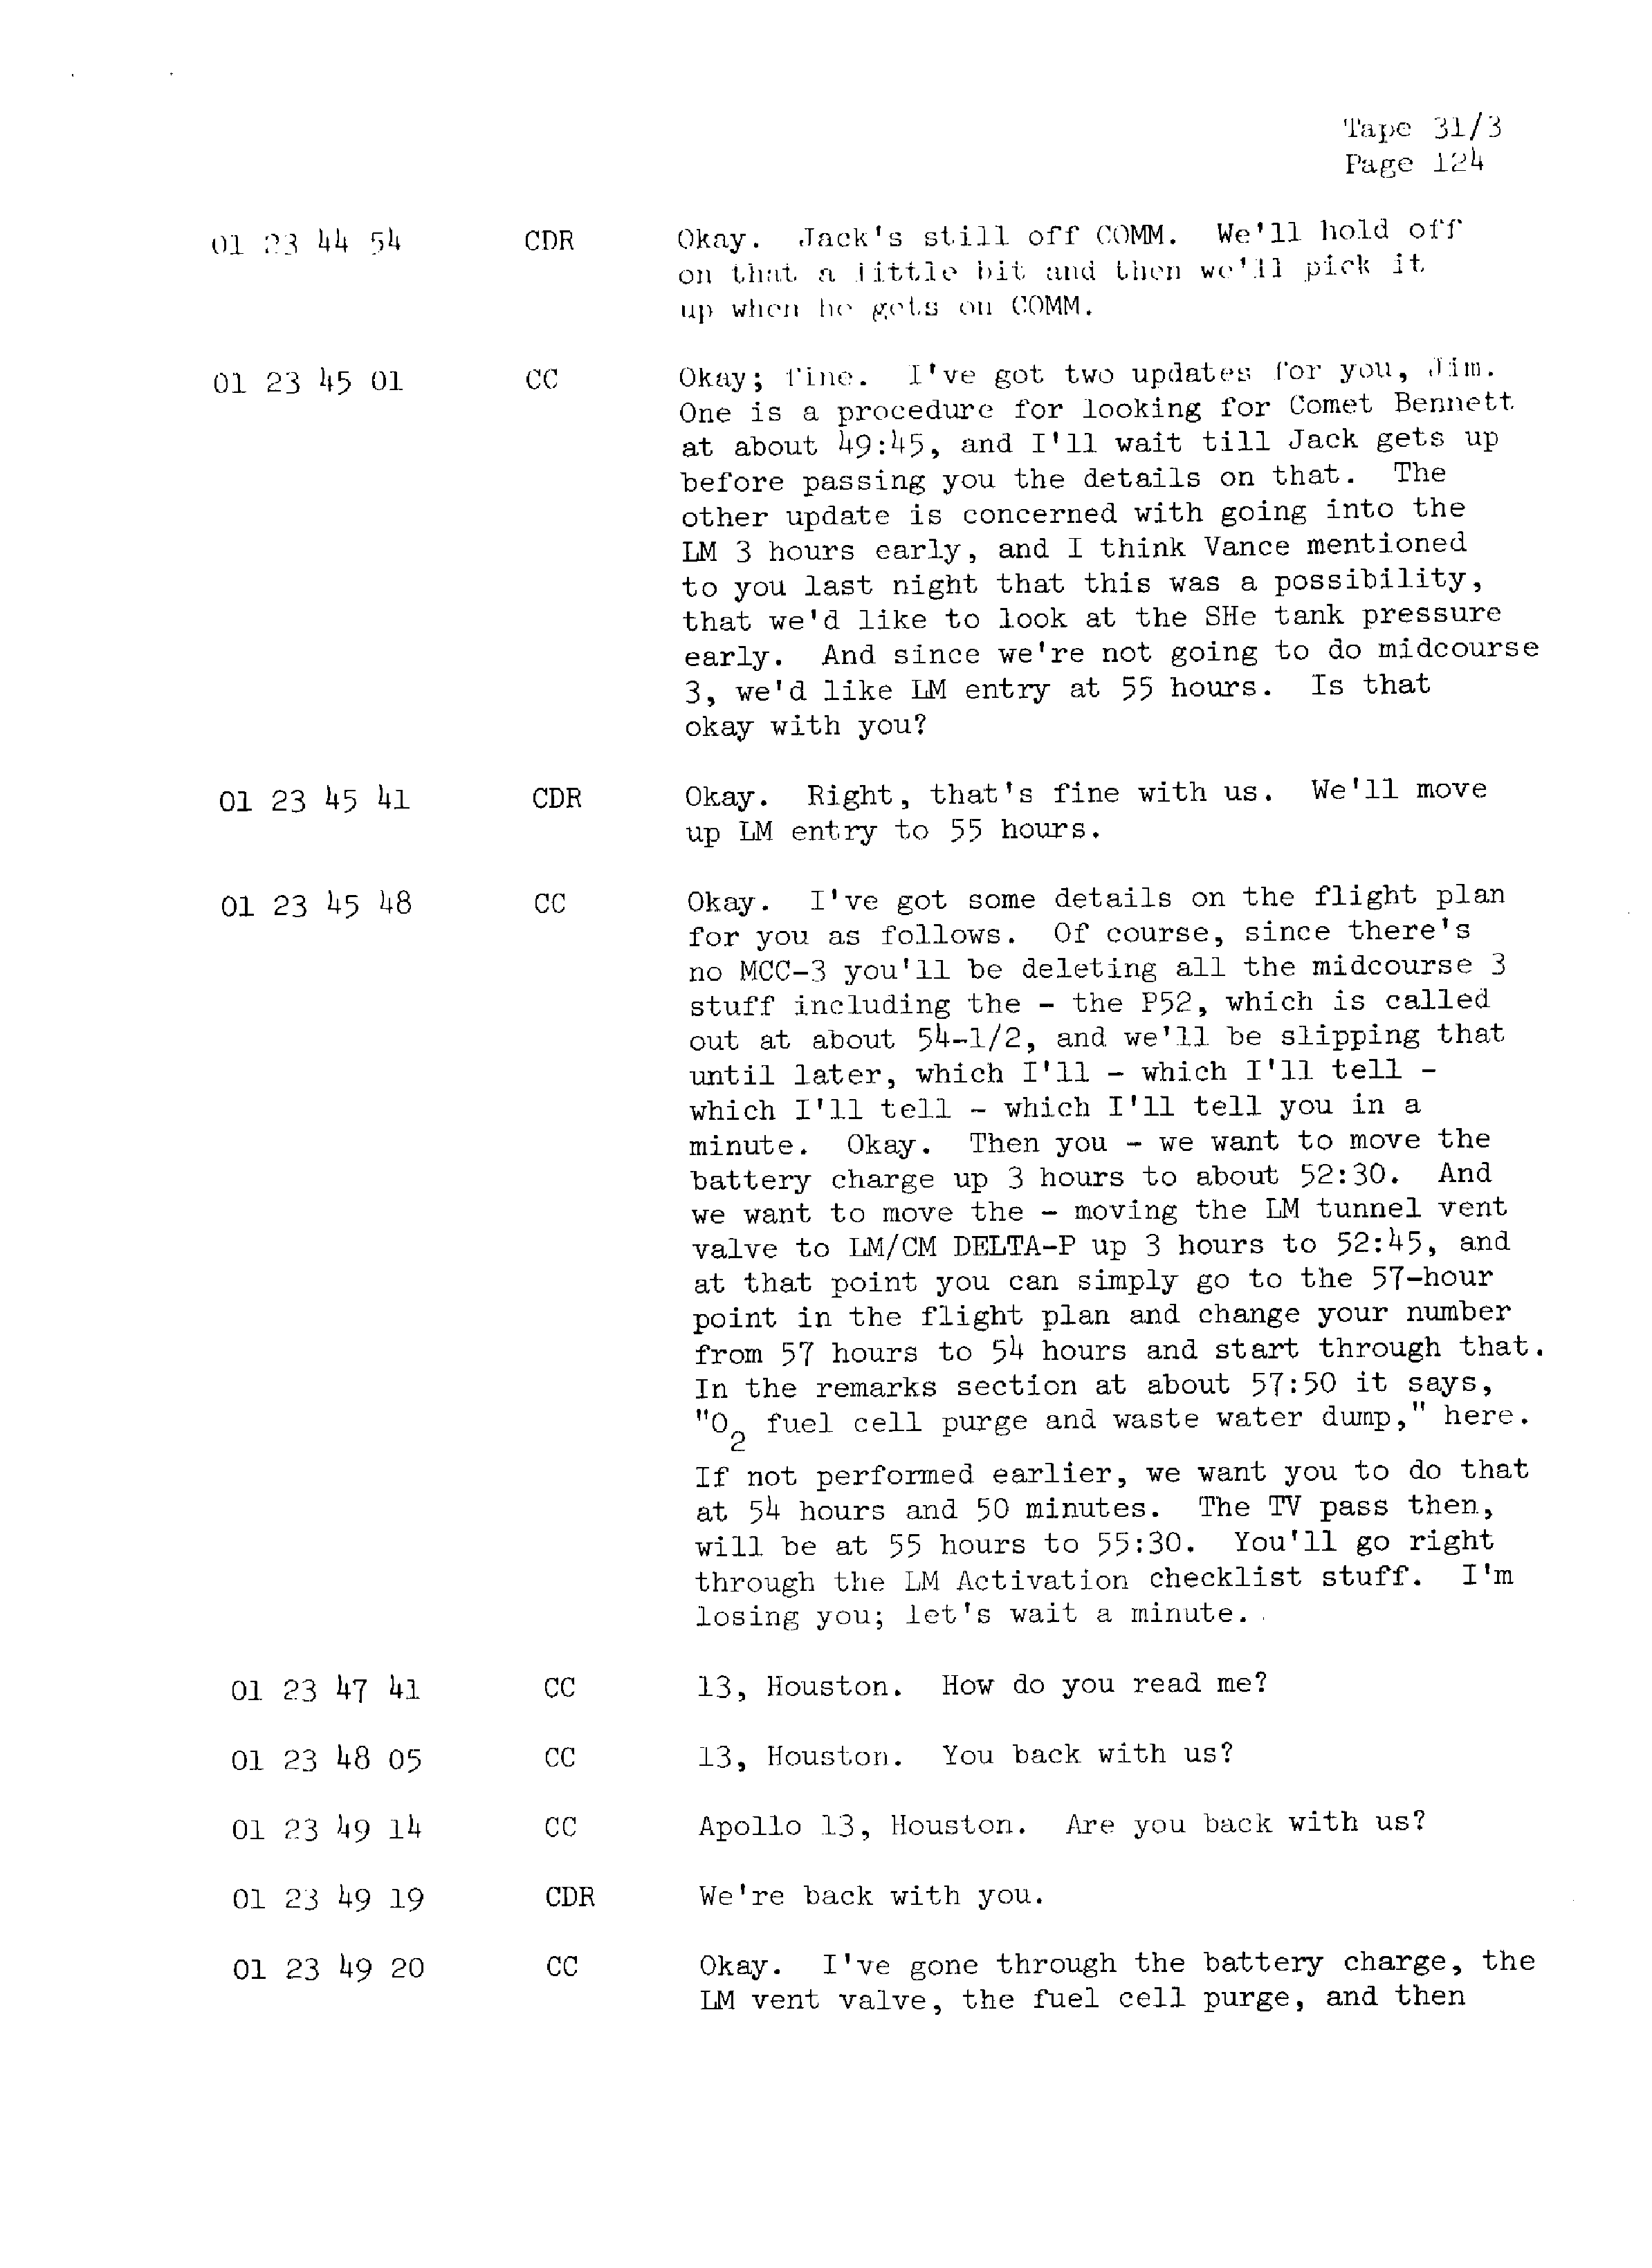 Page 131 of Apollo 13’s original transcript